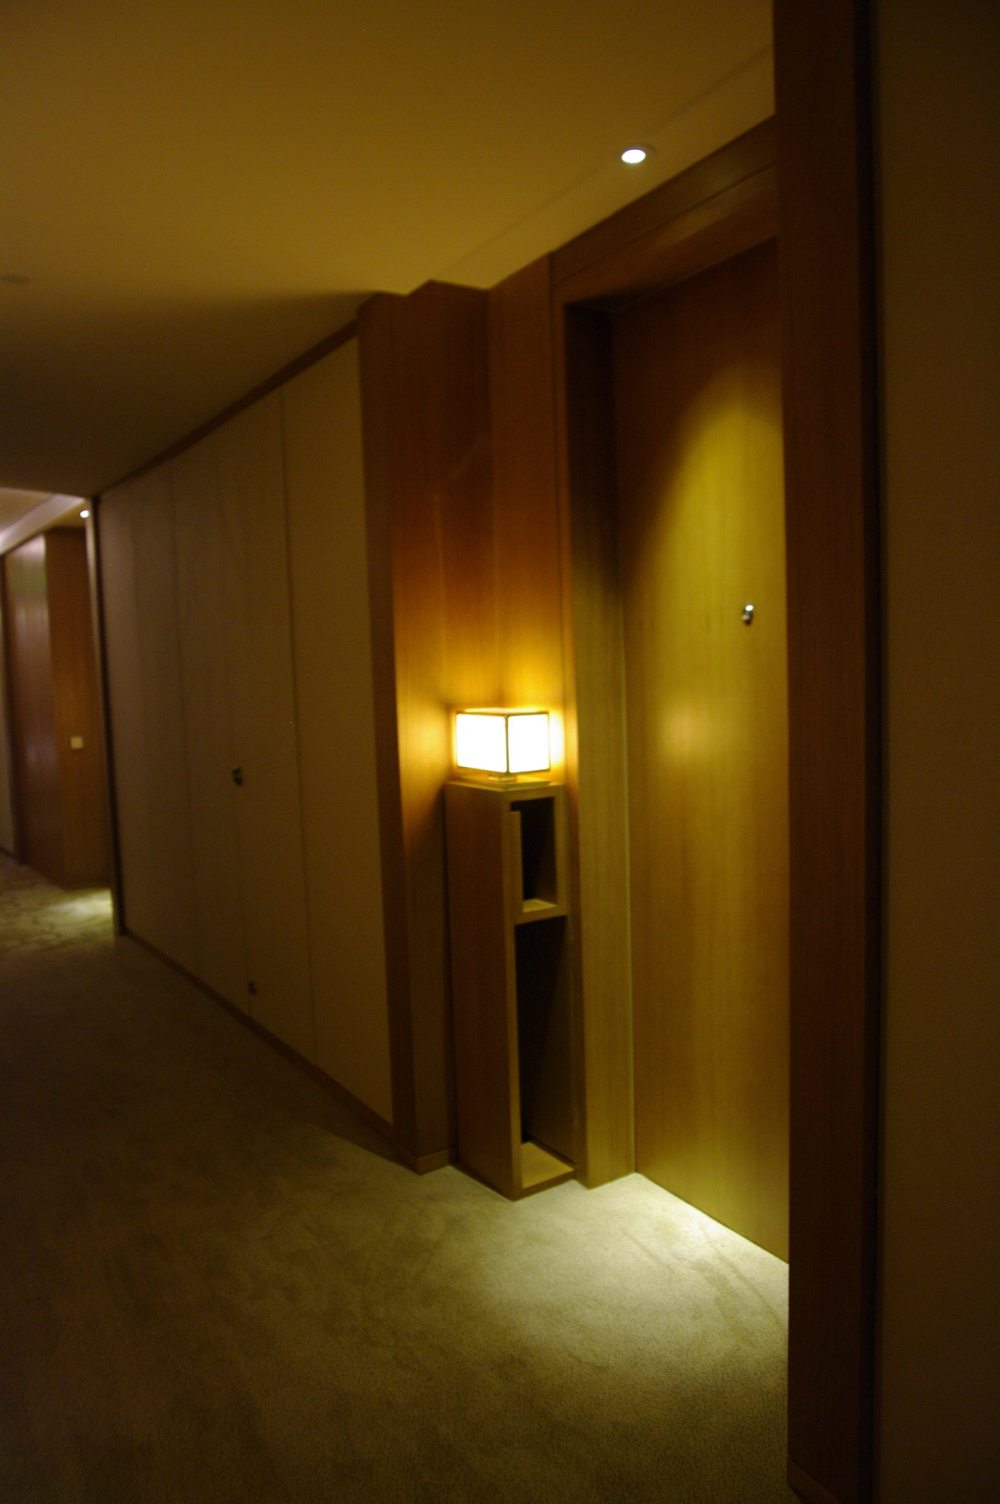 苏州晋合洲际Intercontinental酒店--2012.06.24第八页更新客房__IGP3788.JPG